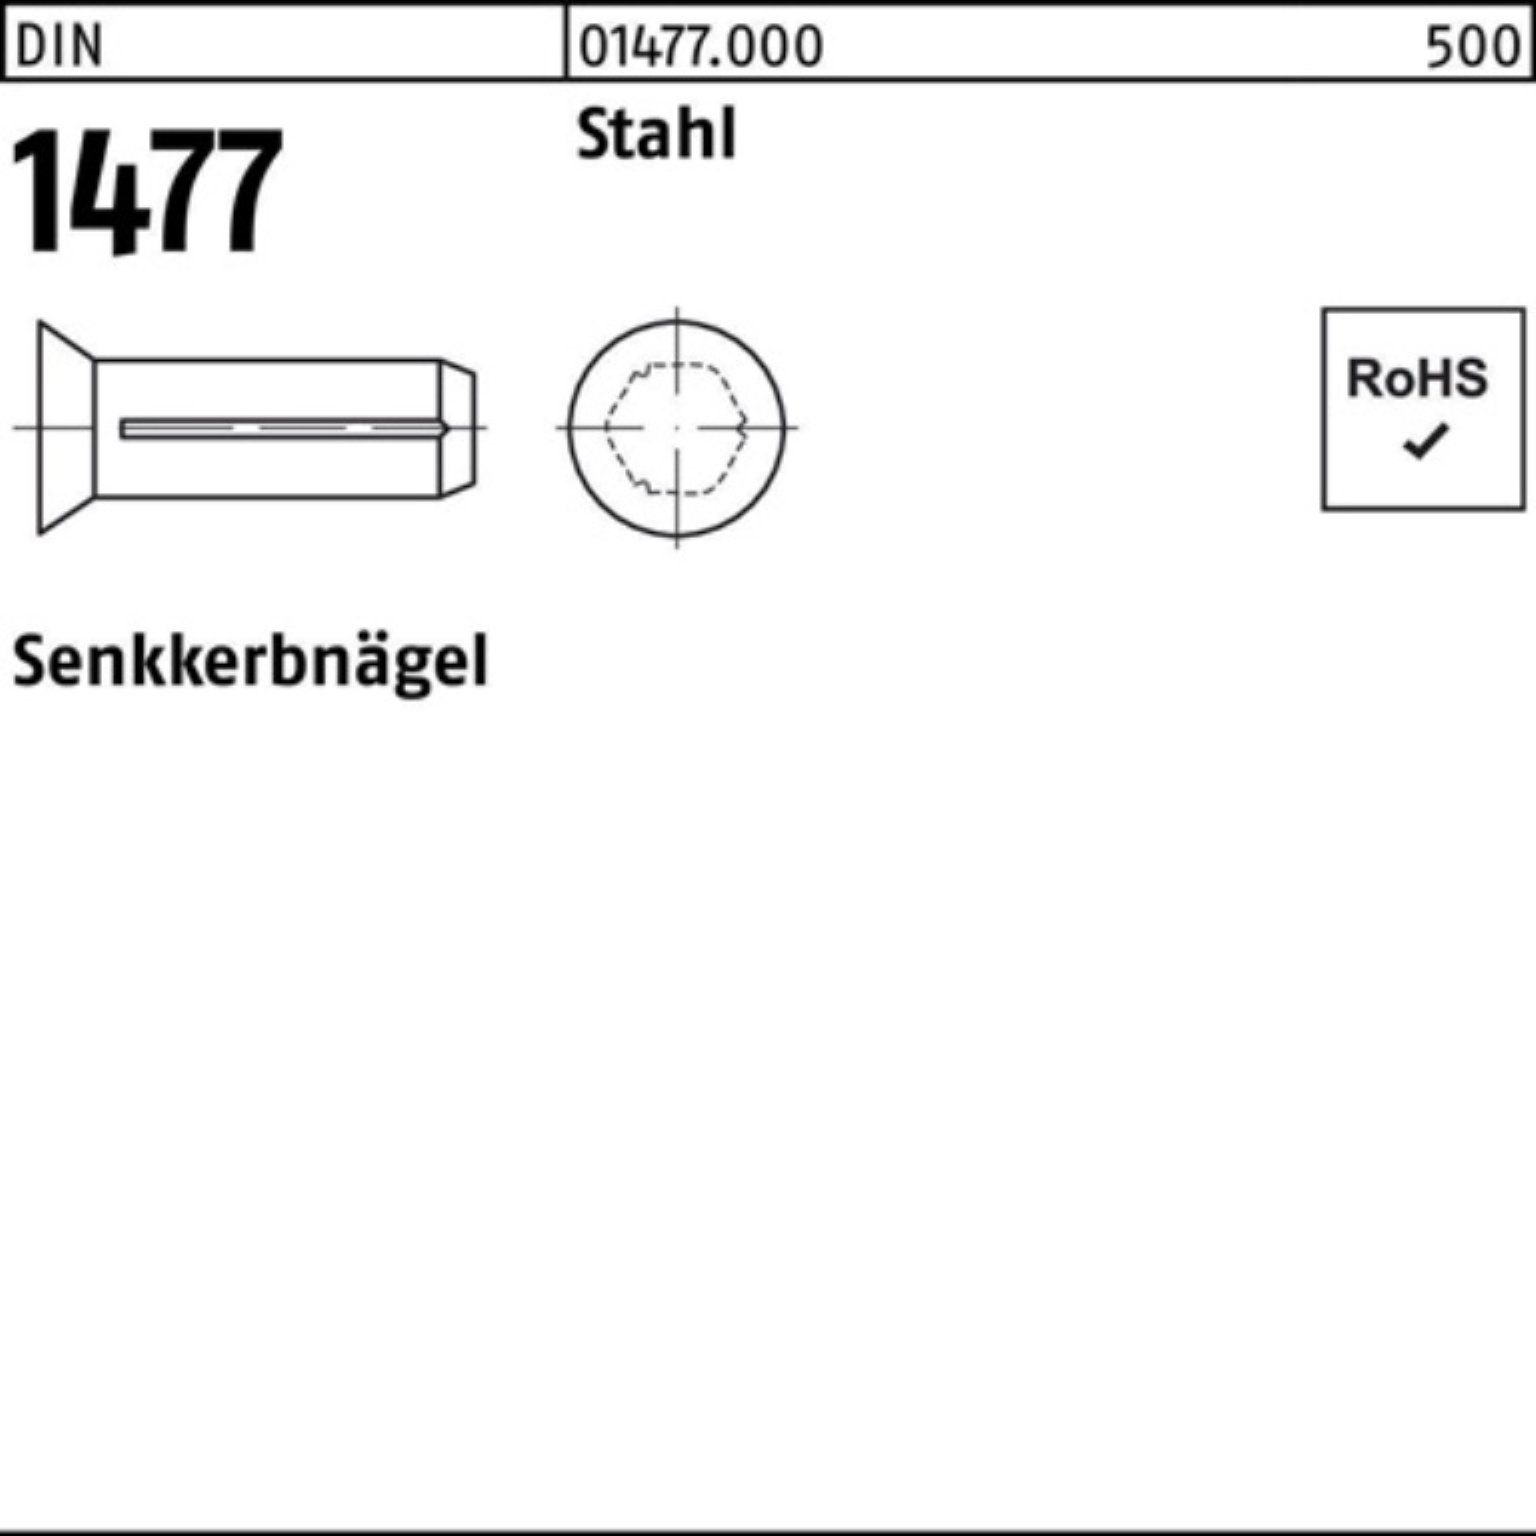 Pack Stahl Senkkerbnagel Stah 12 1477 500 DIN Stück DIN Nagel 1477 500er Reyher 4x